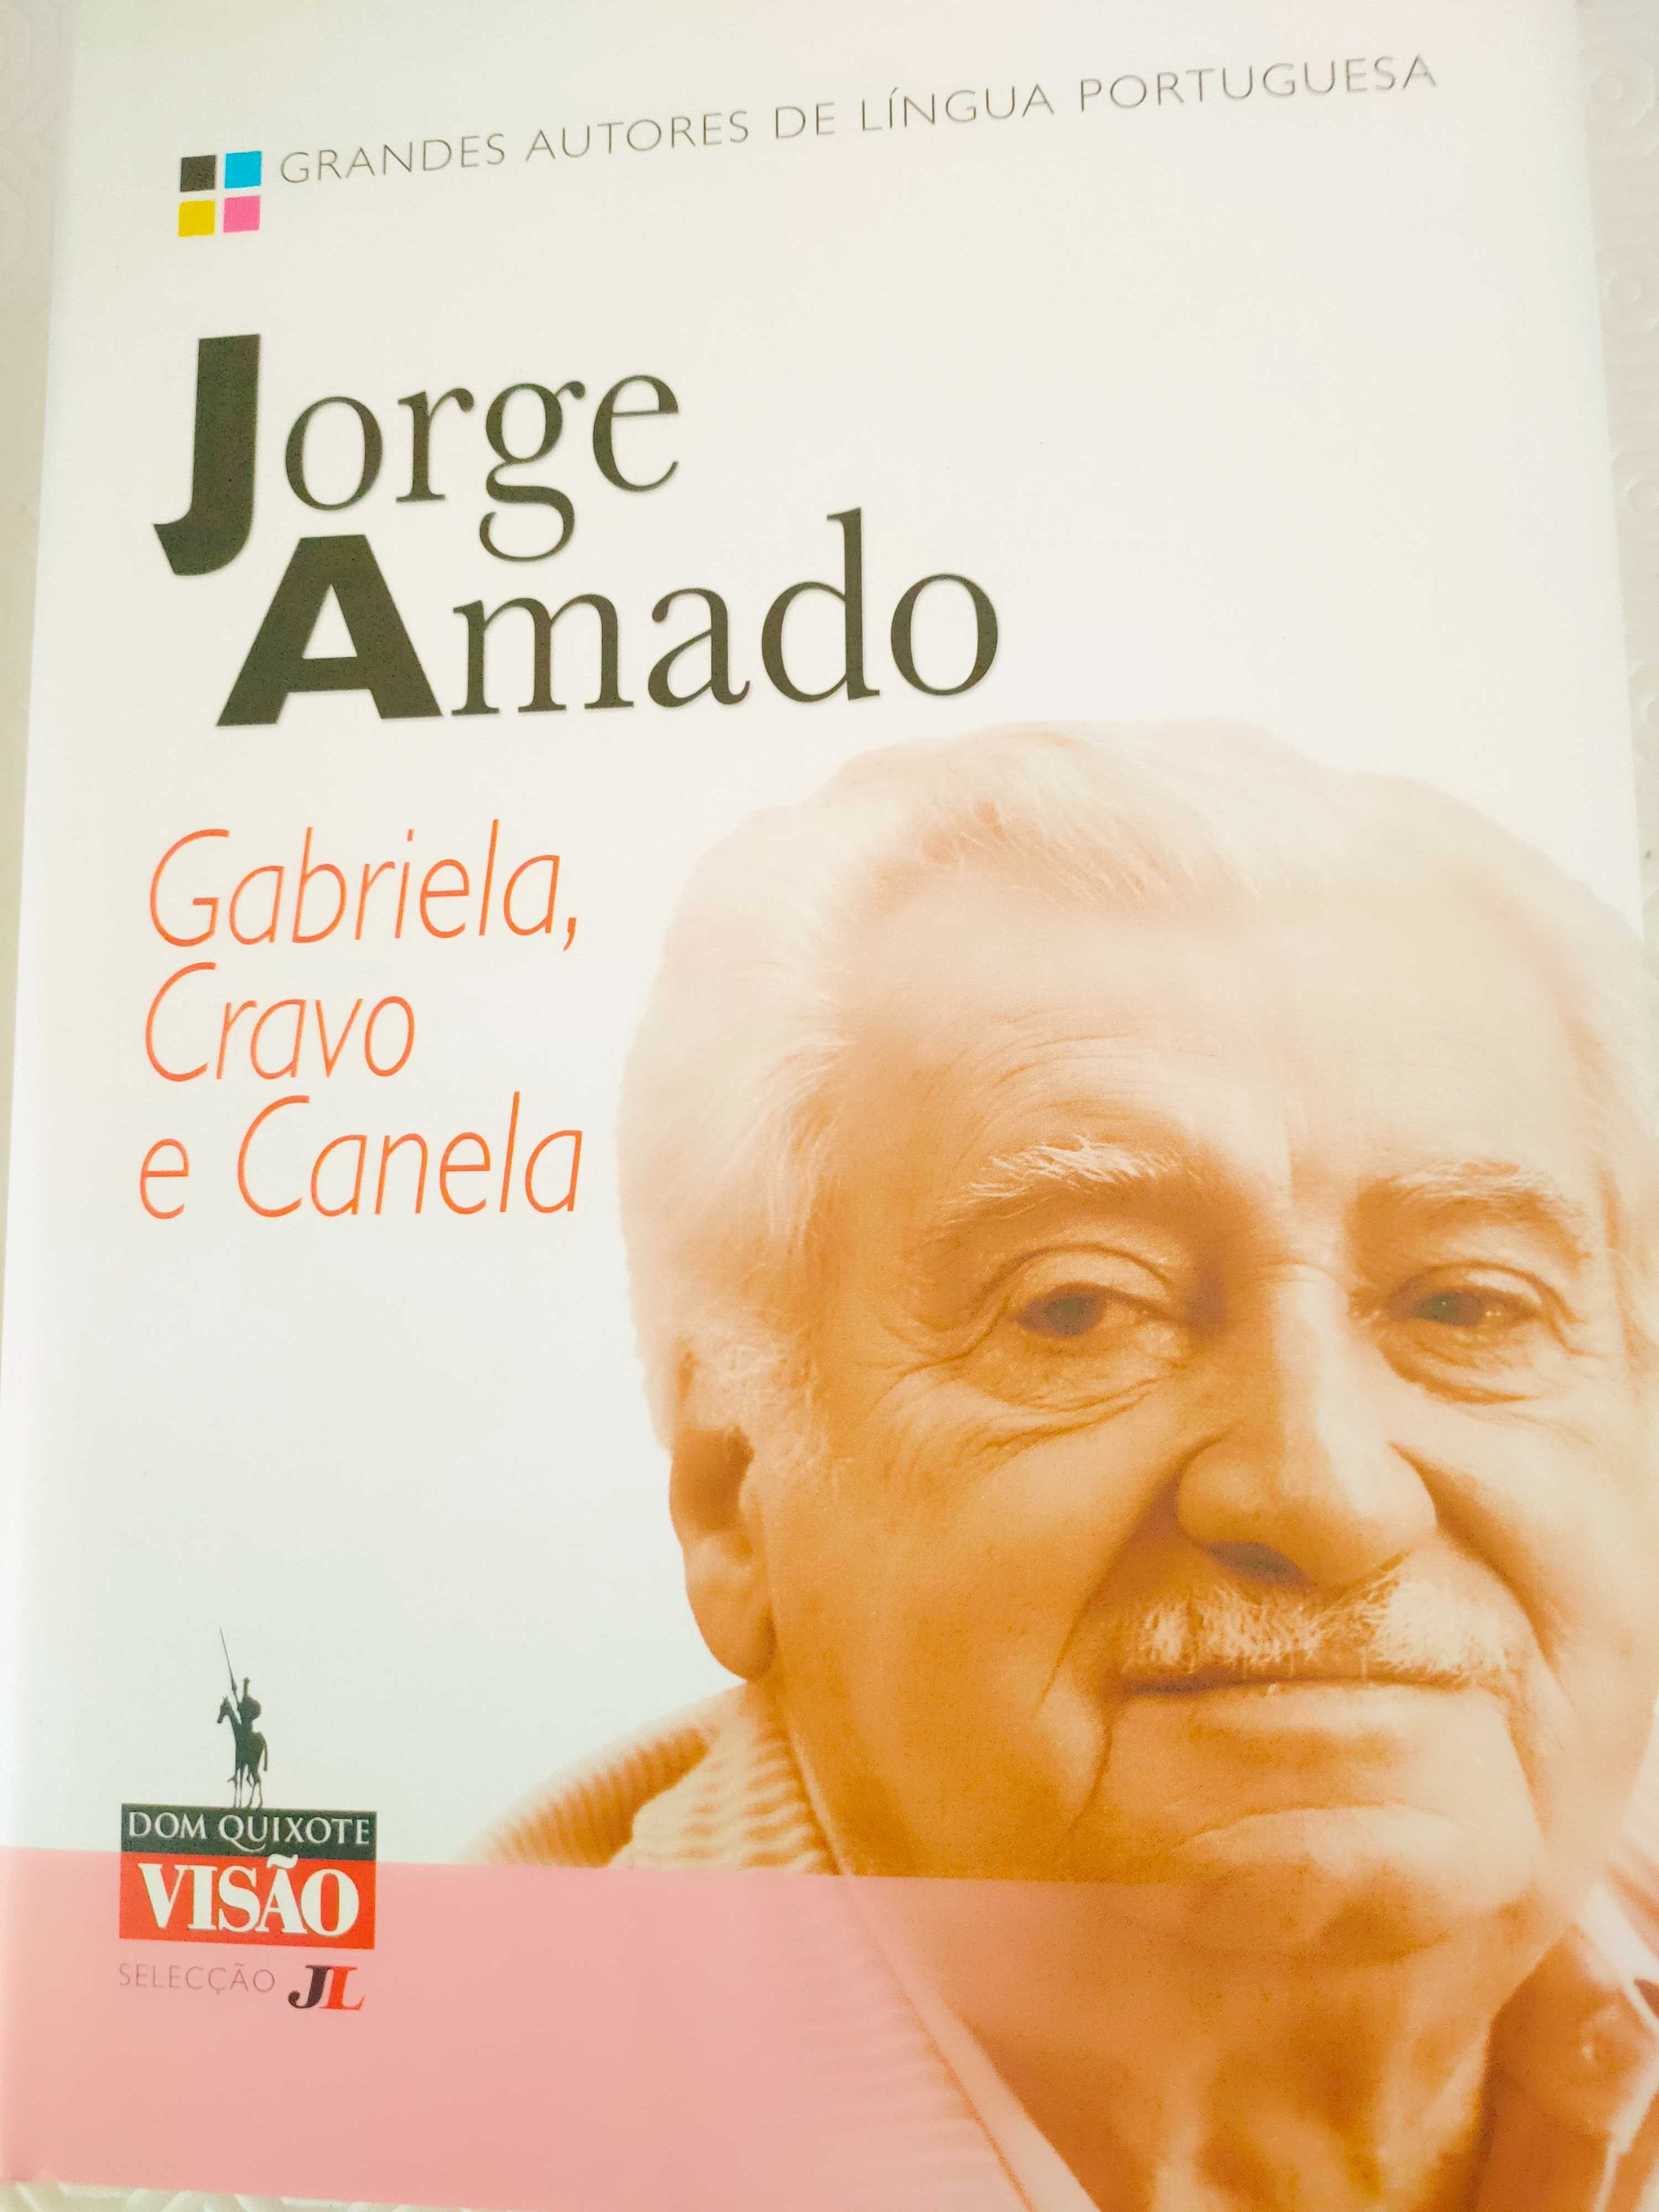 Portes Grátis Livros colecção Visão Autores de Língua Portuguesa